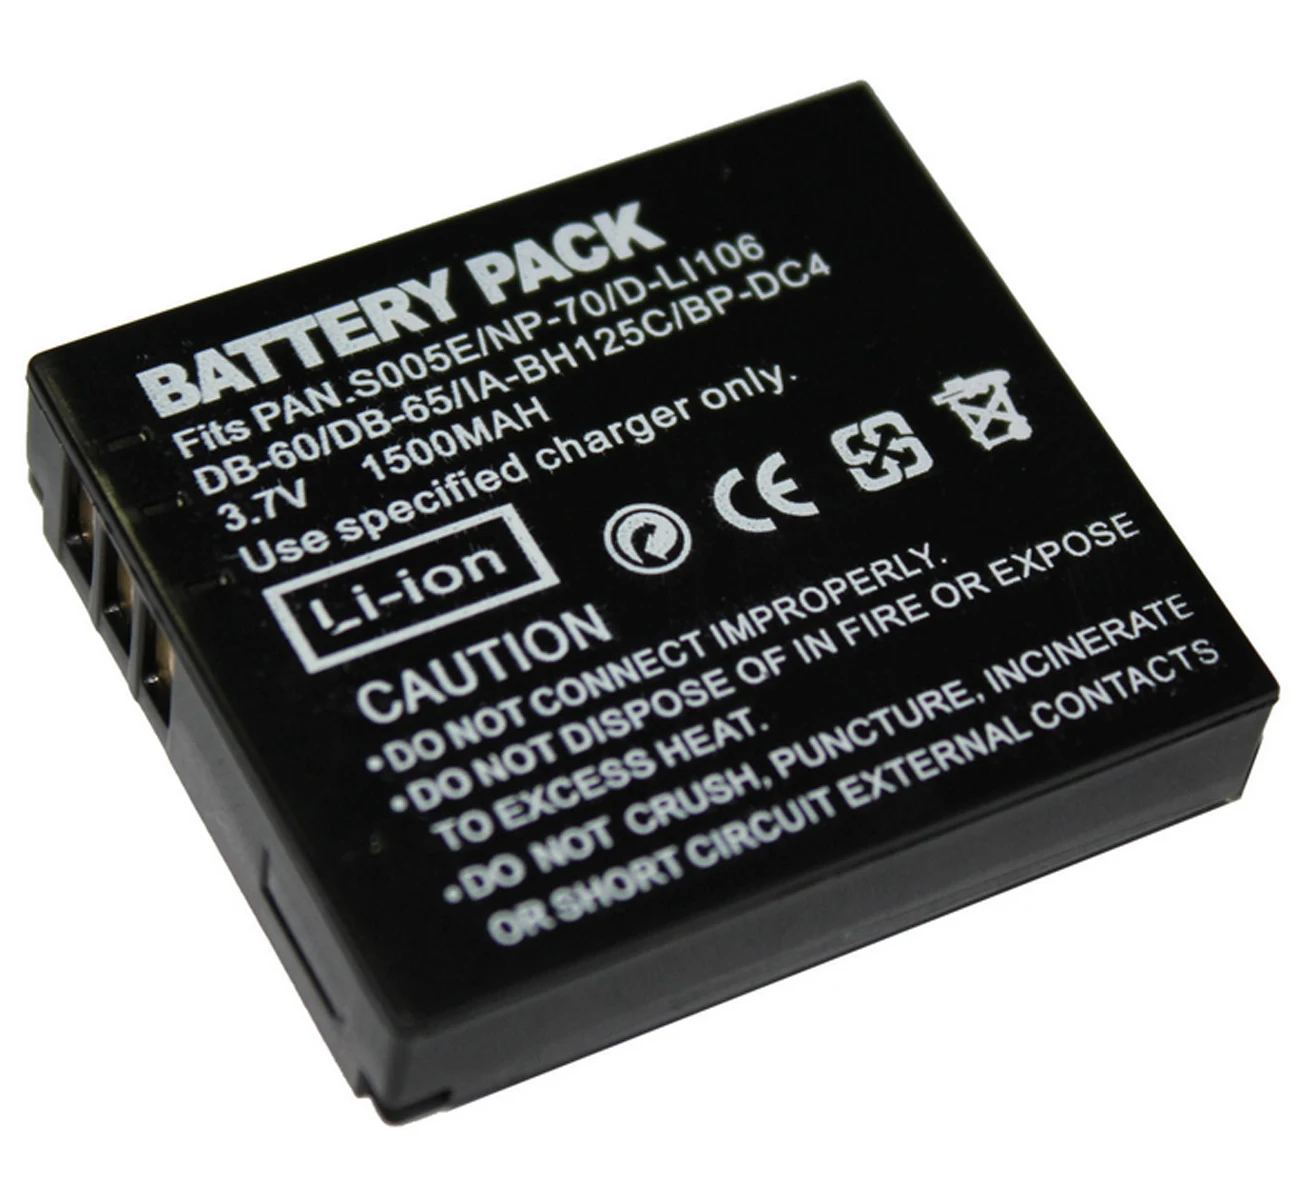 2 Batteries Charger for Panasonic DMCFX580 Panasonic DMC-FX60N Panasonic DMC-FX60 Panasonic DMCFX60 Panasonic DMC-FX60P